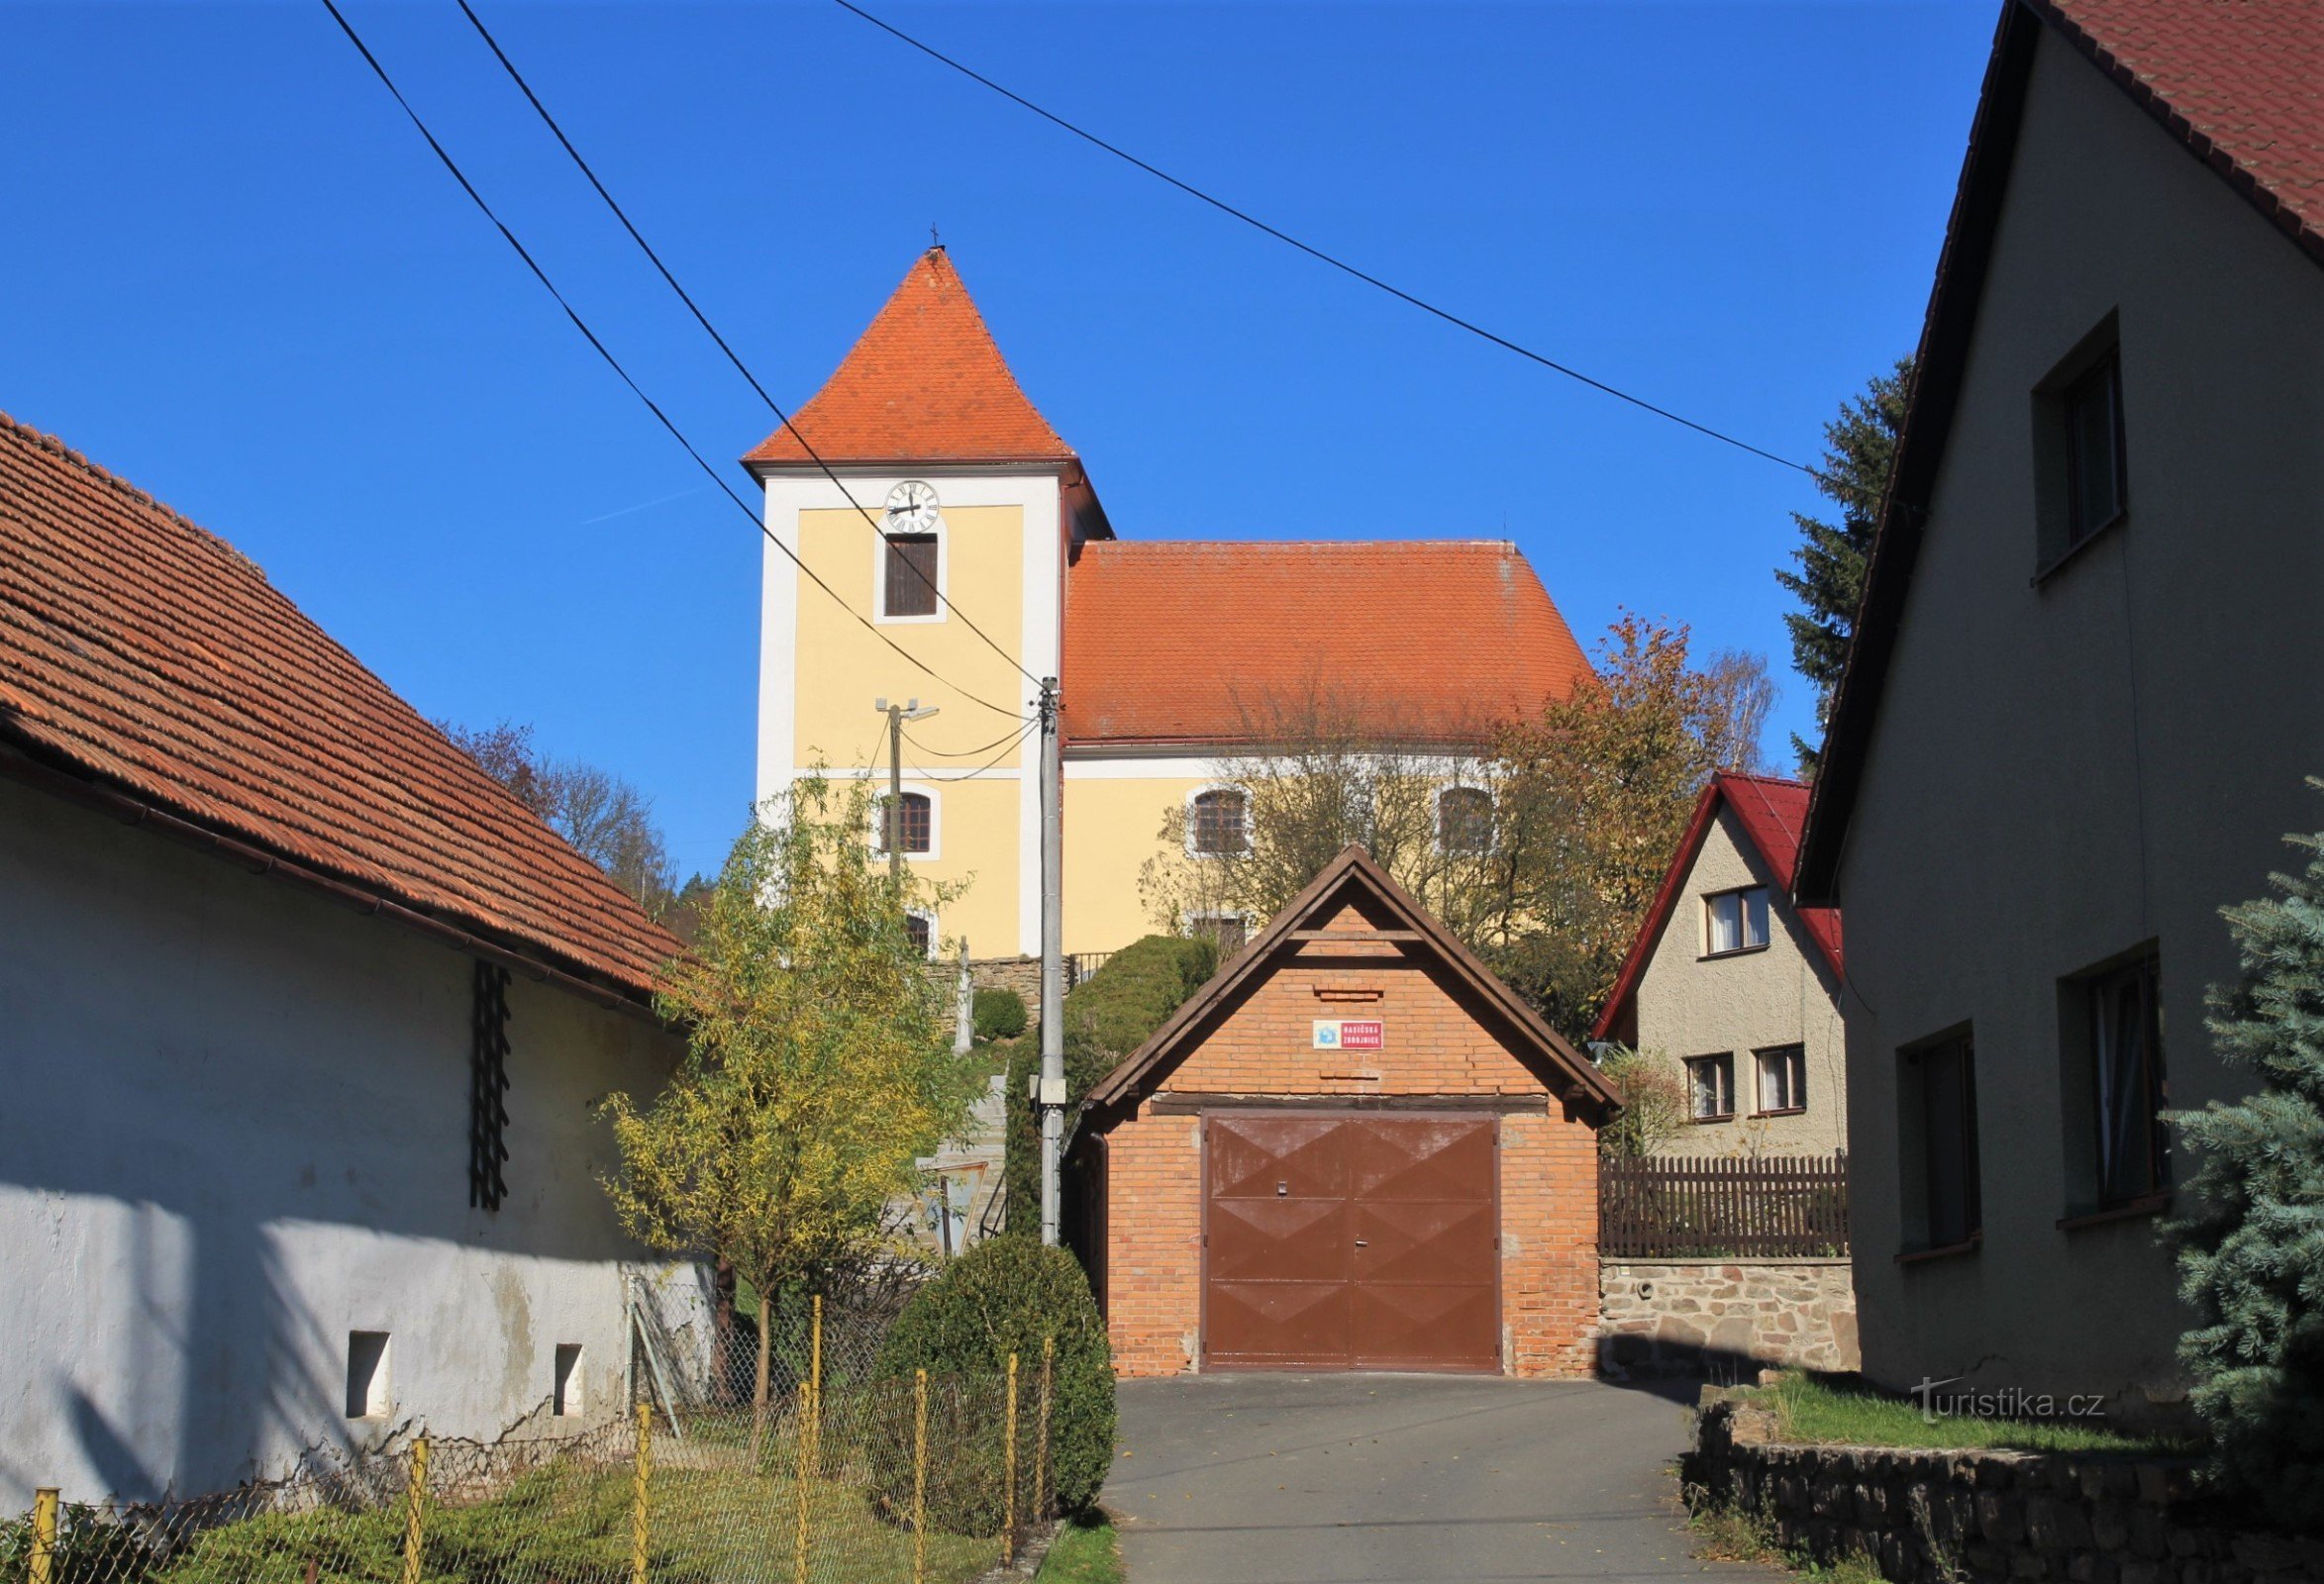 Vedere a bisericii din sat